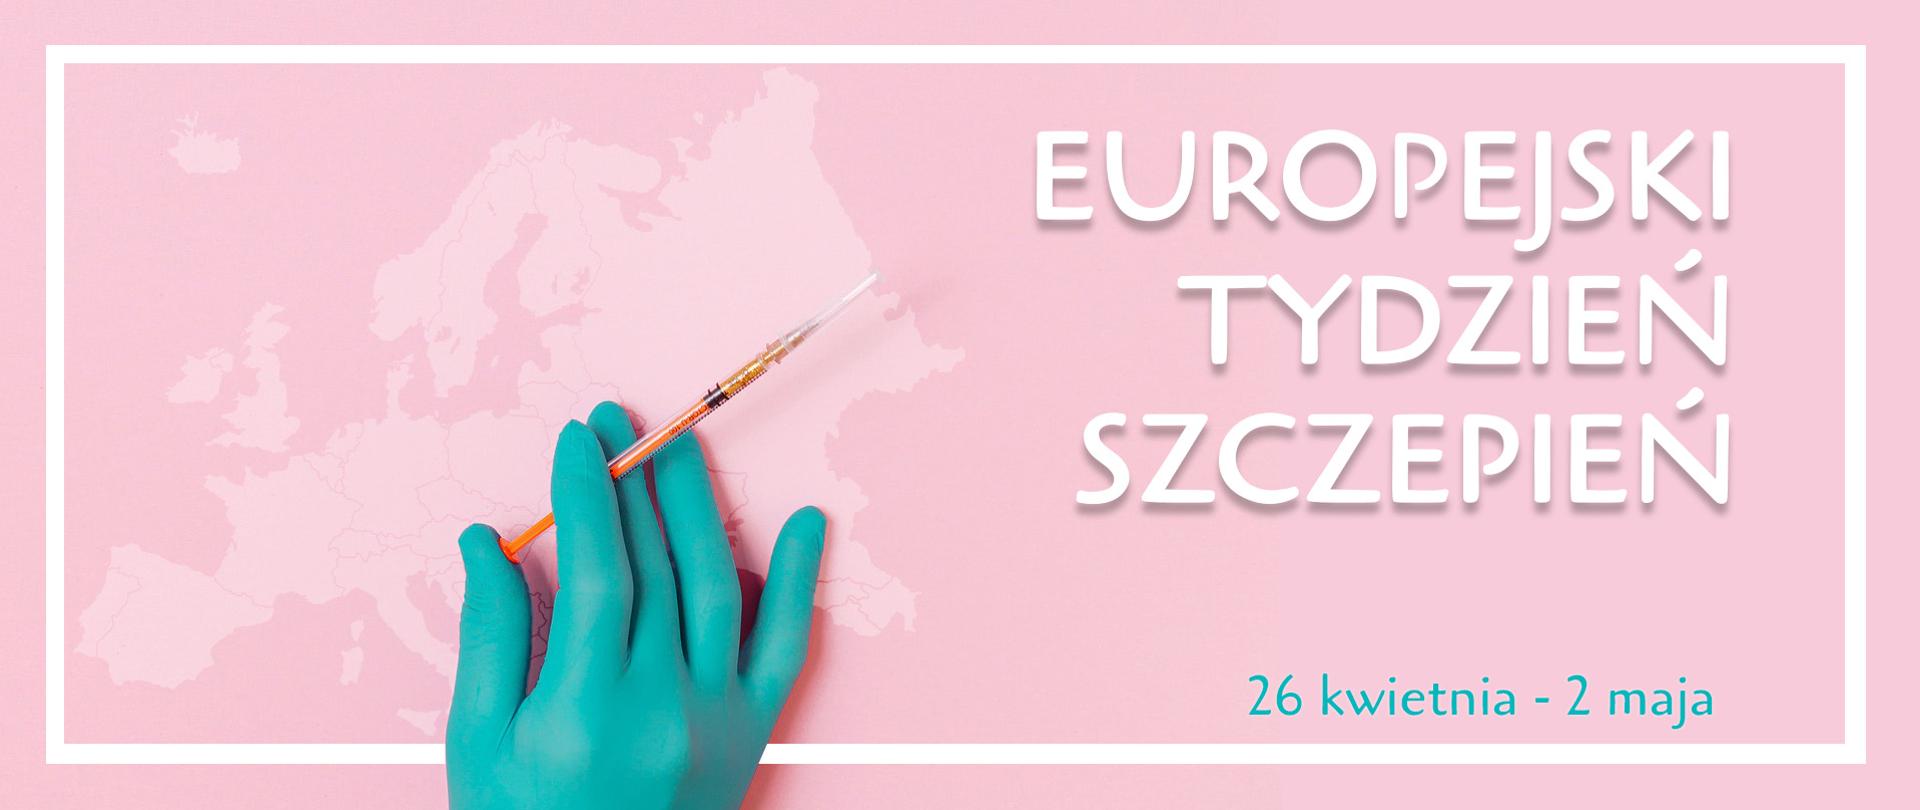 Ręka w chirurgicznej rękawiczce trzyma strzykawkę na tle mapy Europy. Napis: Europejski tydzień szczepień 26 kwietnia - 2 maja.